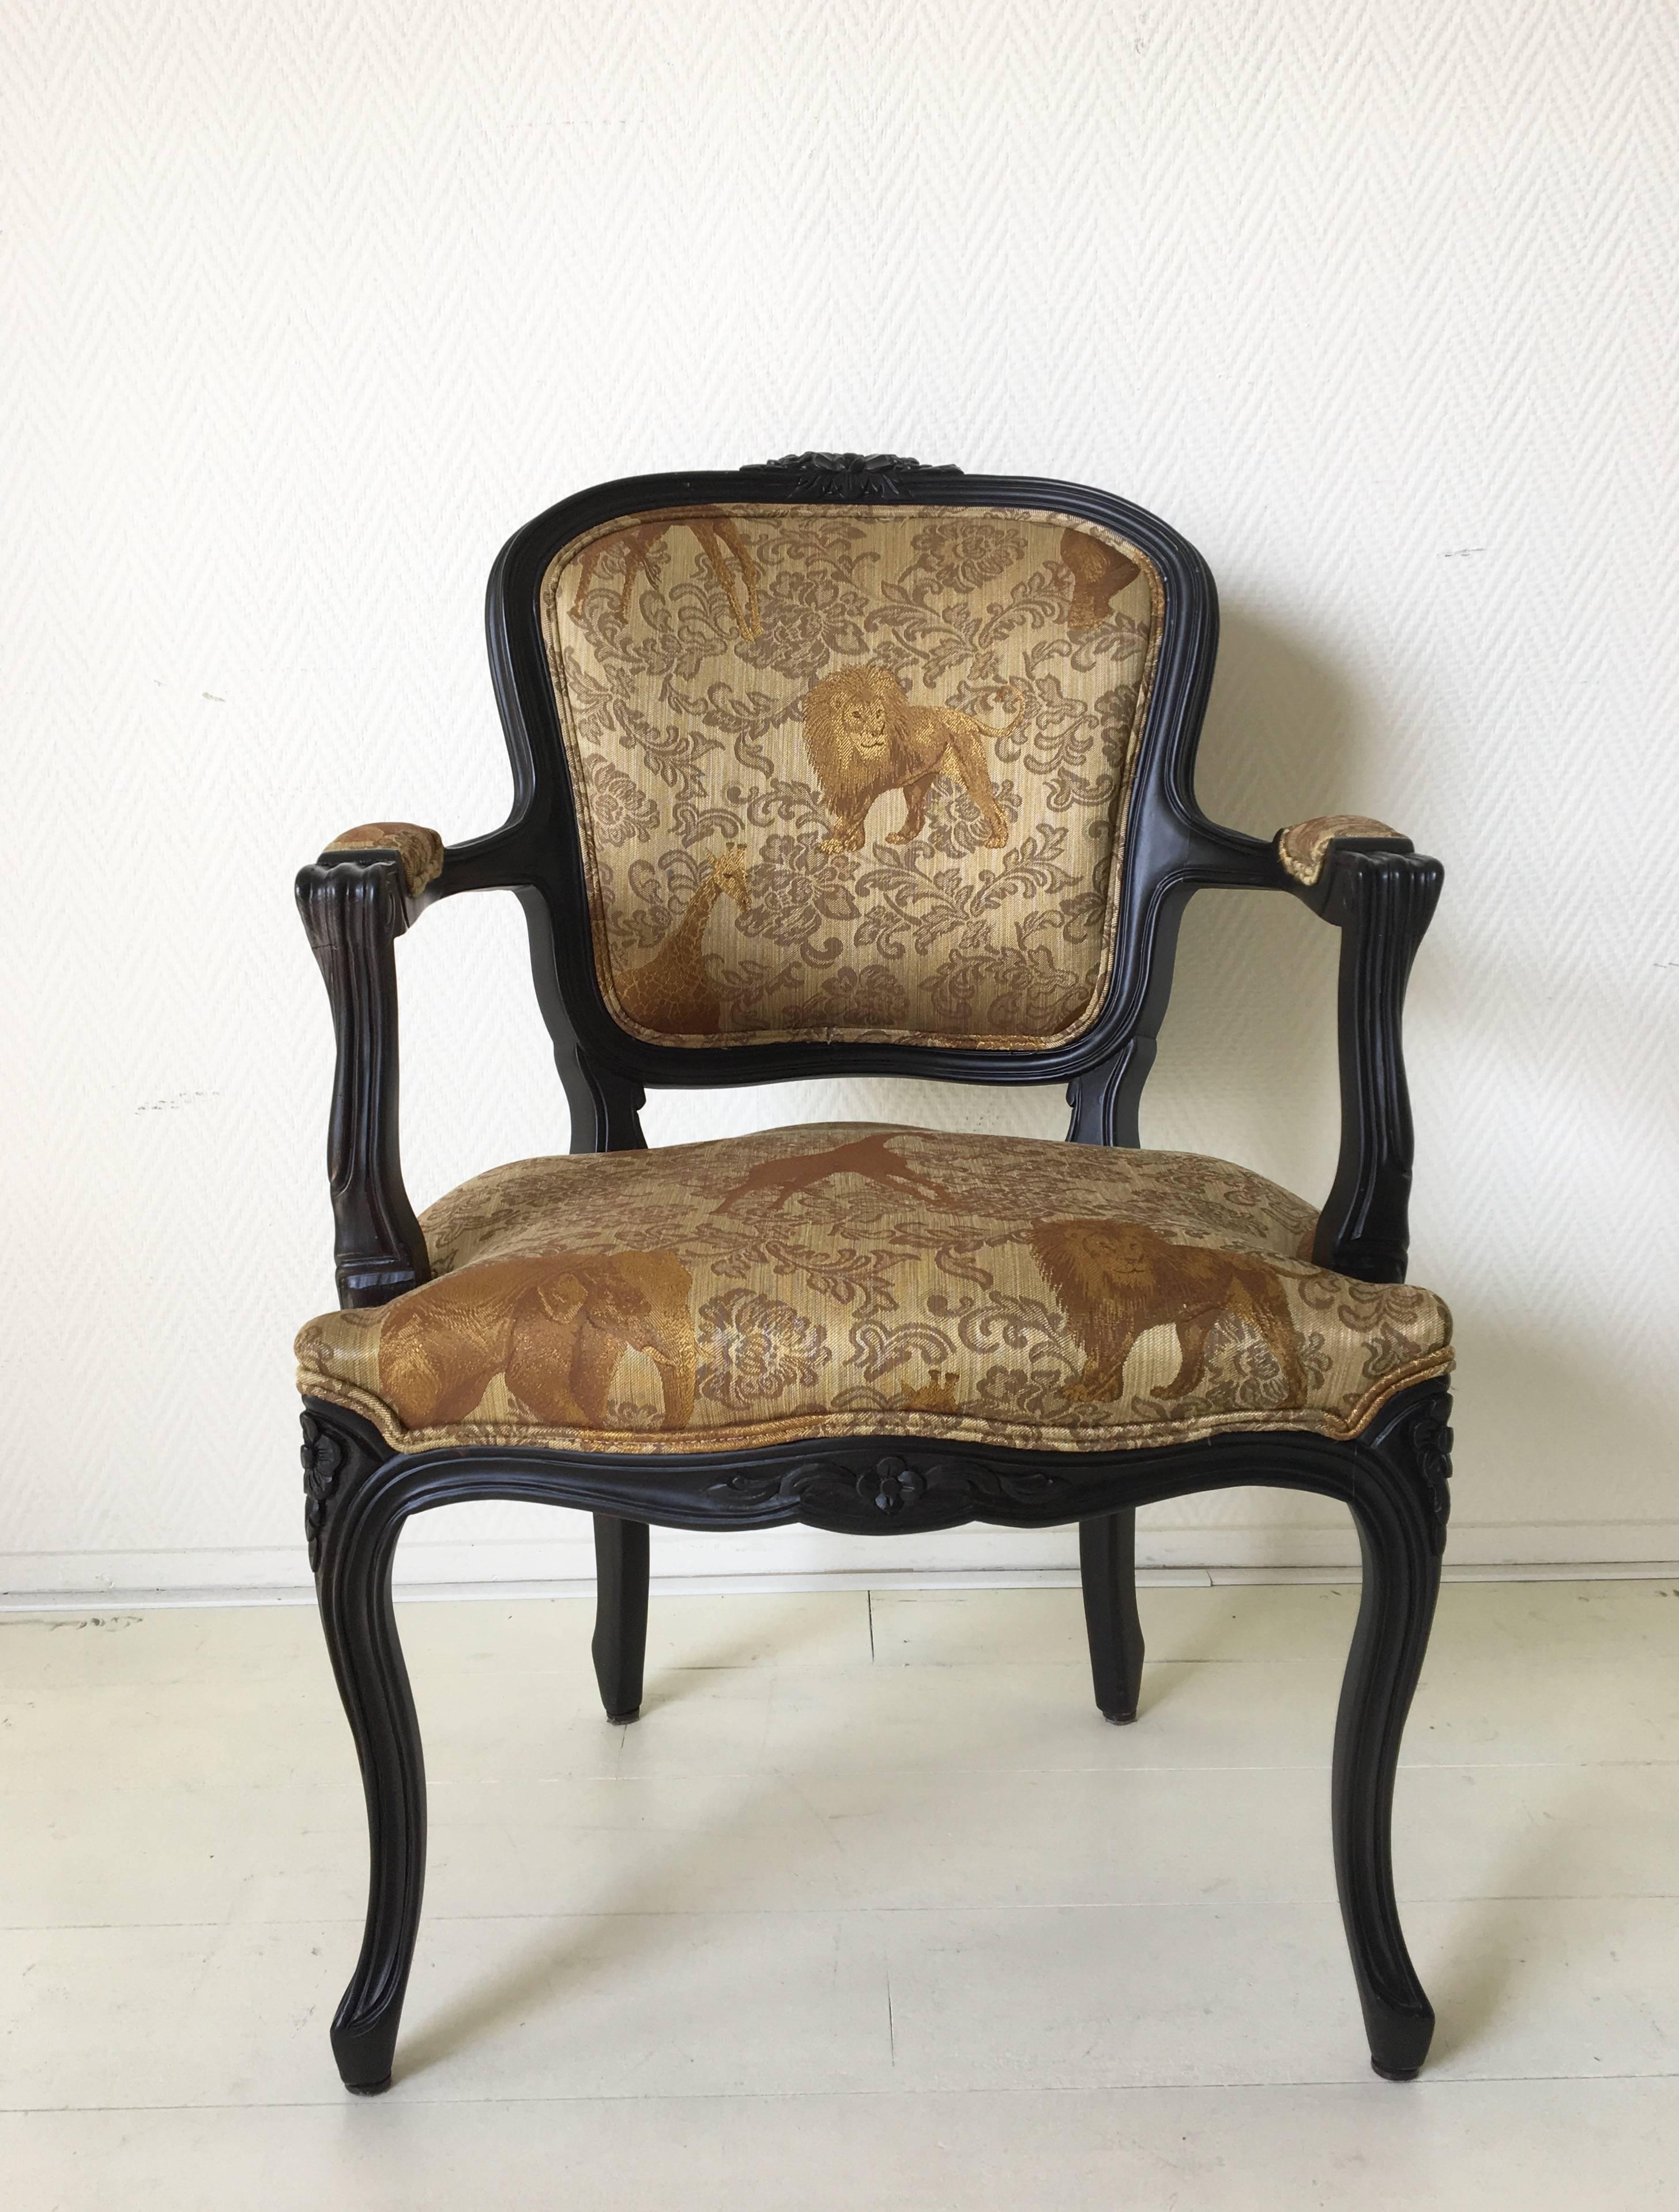 Exklusives Design des spanischen Familienunternehmens Ascension Latorre. Das Unternehmen ist für seine handgefertigten Möbel bekannt. Der Stuhl verfügt über einen ebonisierten Holzsockel mit einer goldfarbenen Polsterung mit Wildtieren. Dieses